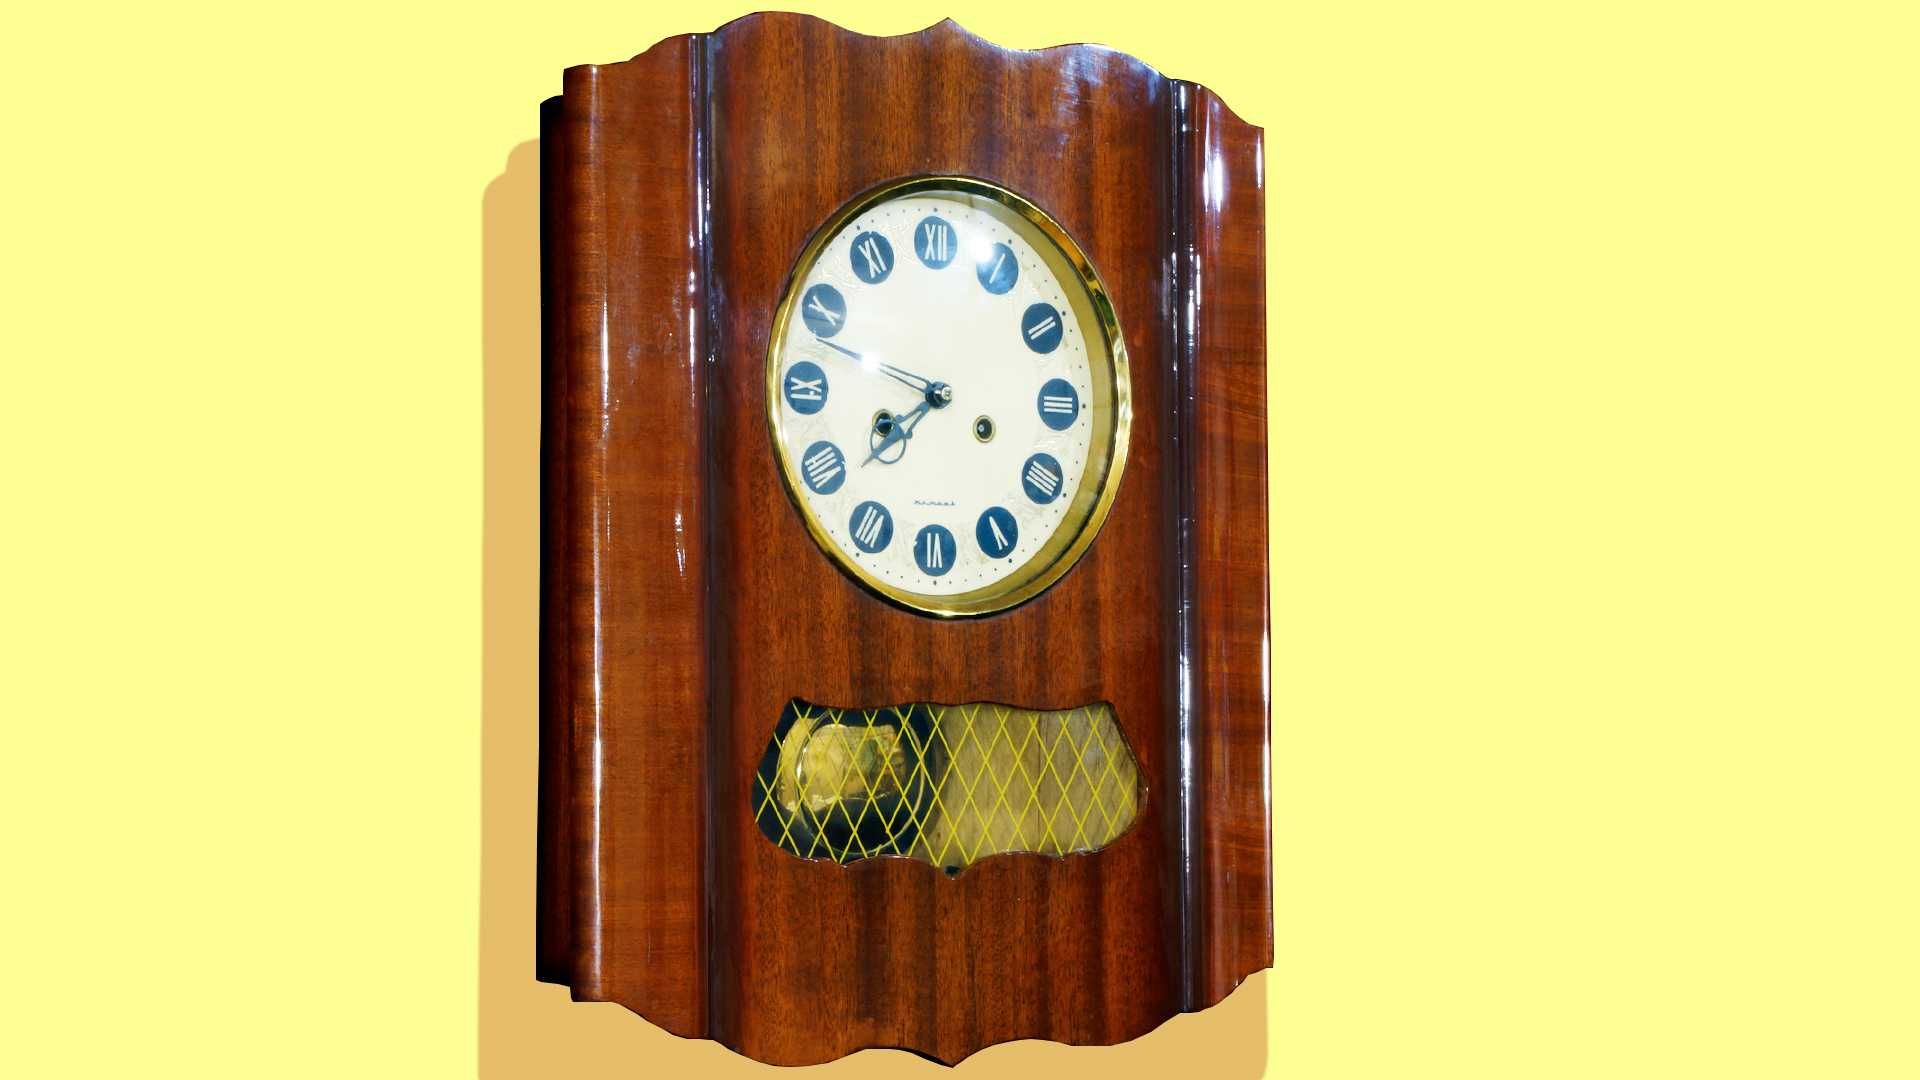 ОЧЗ-Янтарь.Настенные часы с боем.70-е годы.Состояние Идеал.Есть видео.